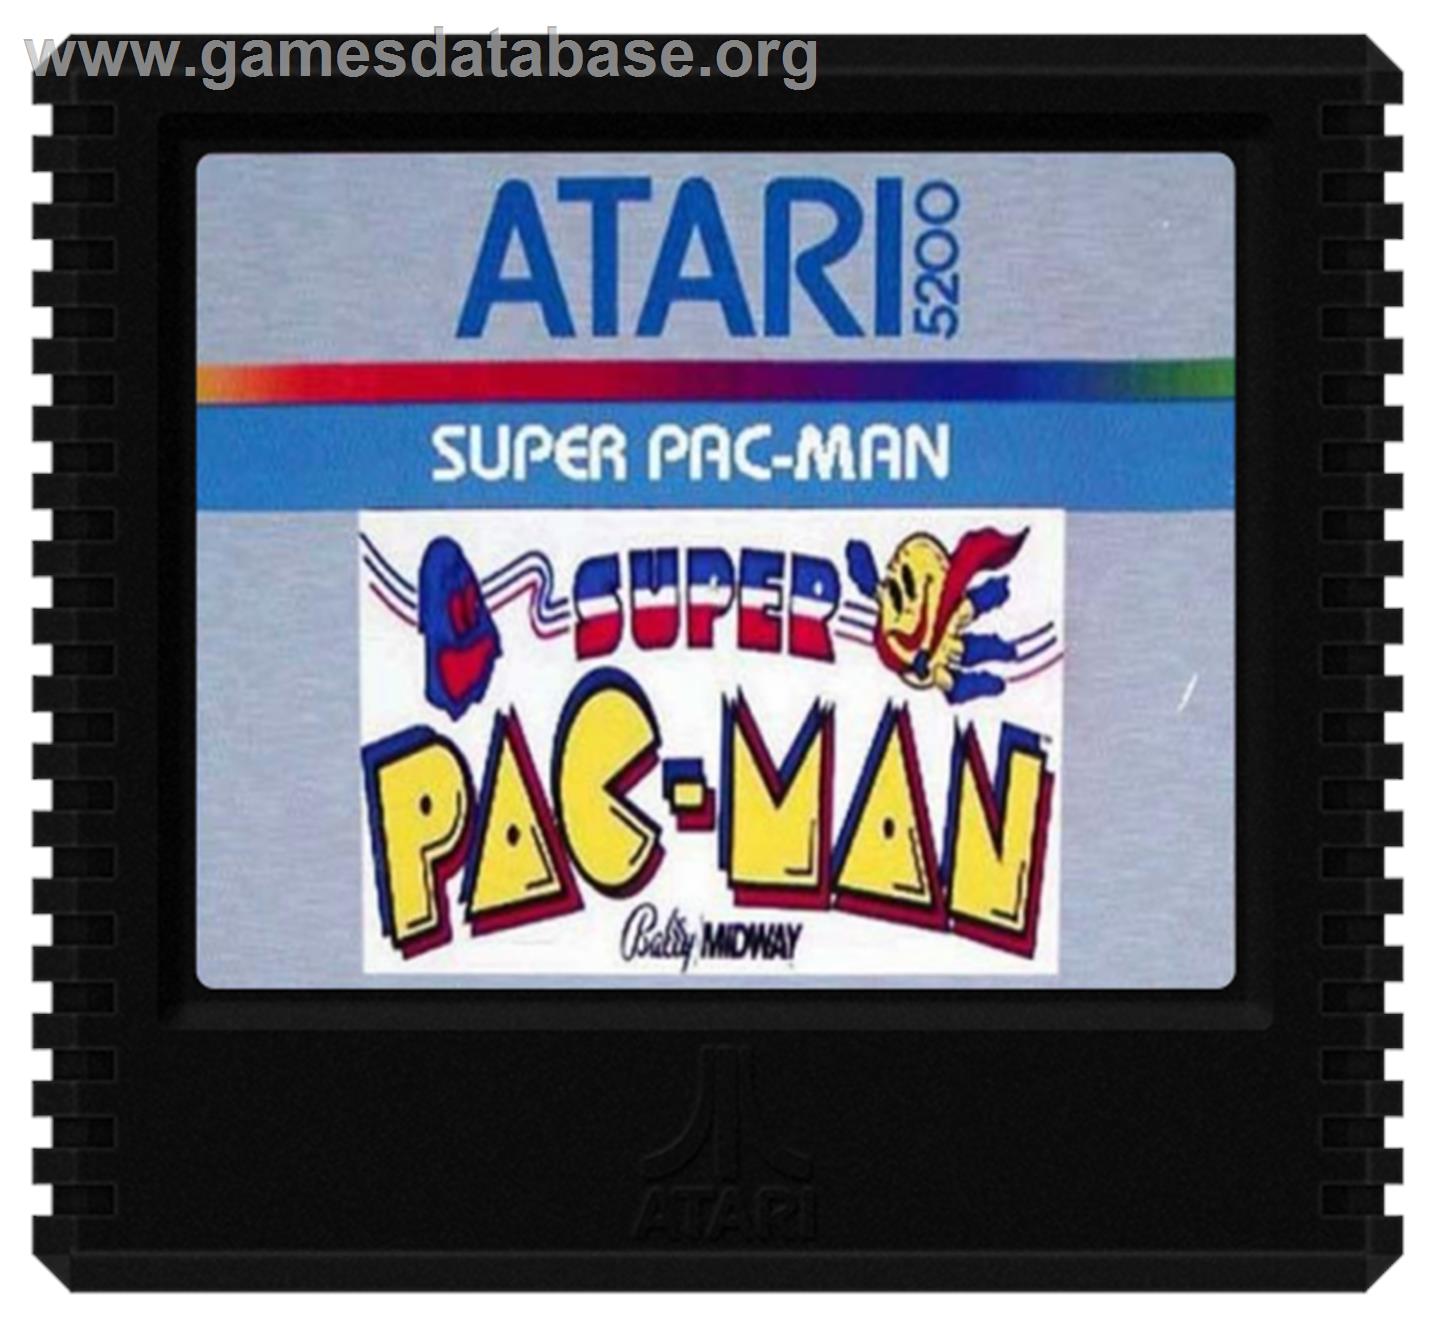 Super Pac-Man - Atari 5200 - Artwork - Cartridge